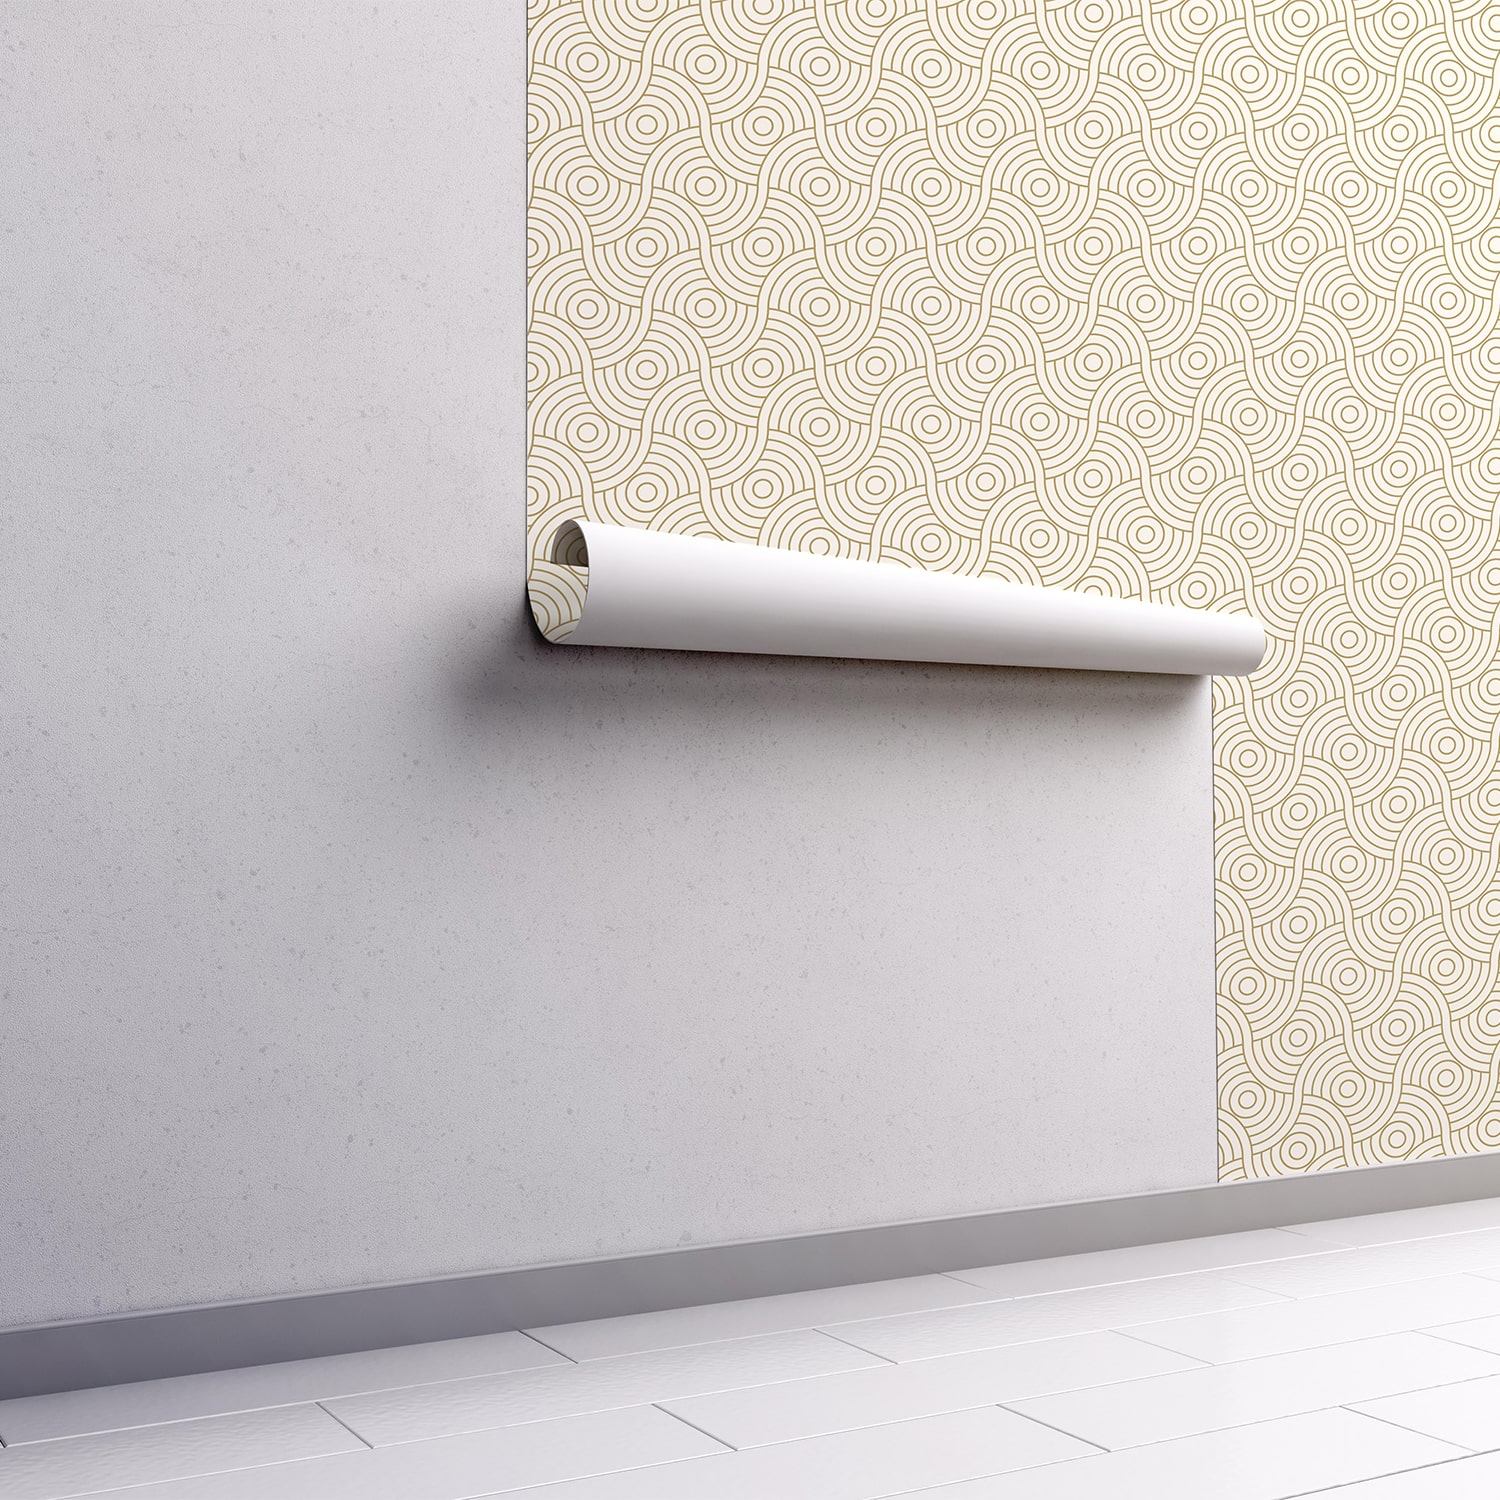 PP41-mur.rouleau-papier-peint-adhesif-decoratif-revetement-vinyle-rond-géométriques-croisés-renovation-meuble-mur-min